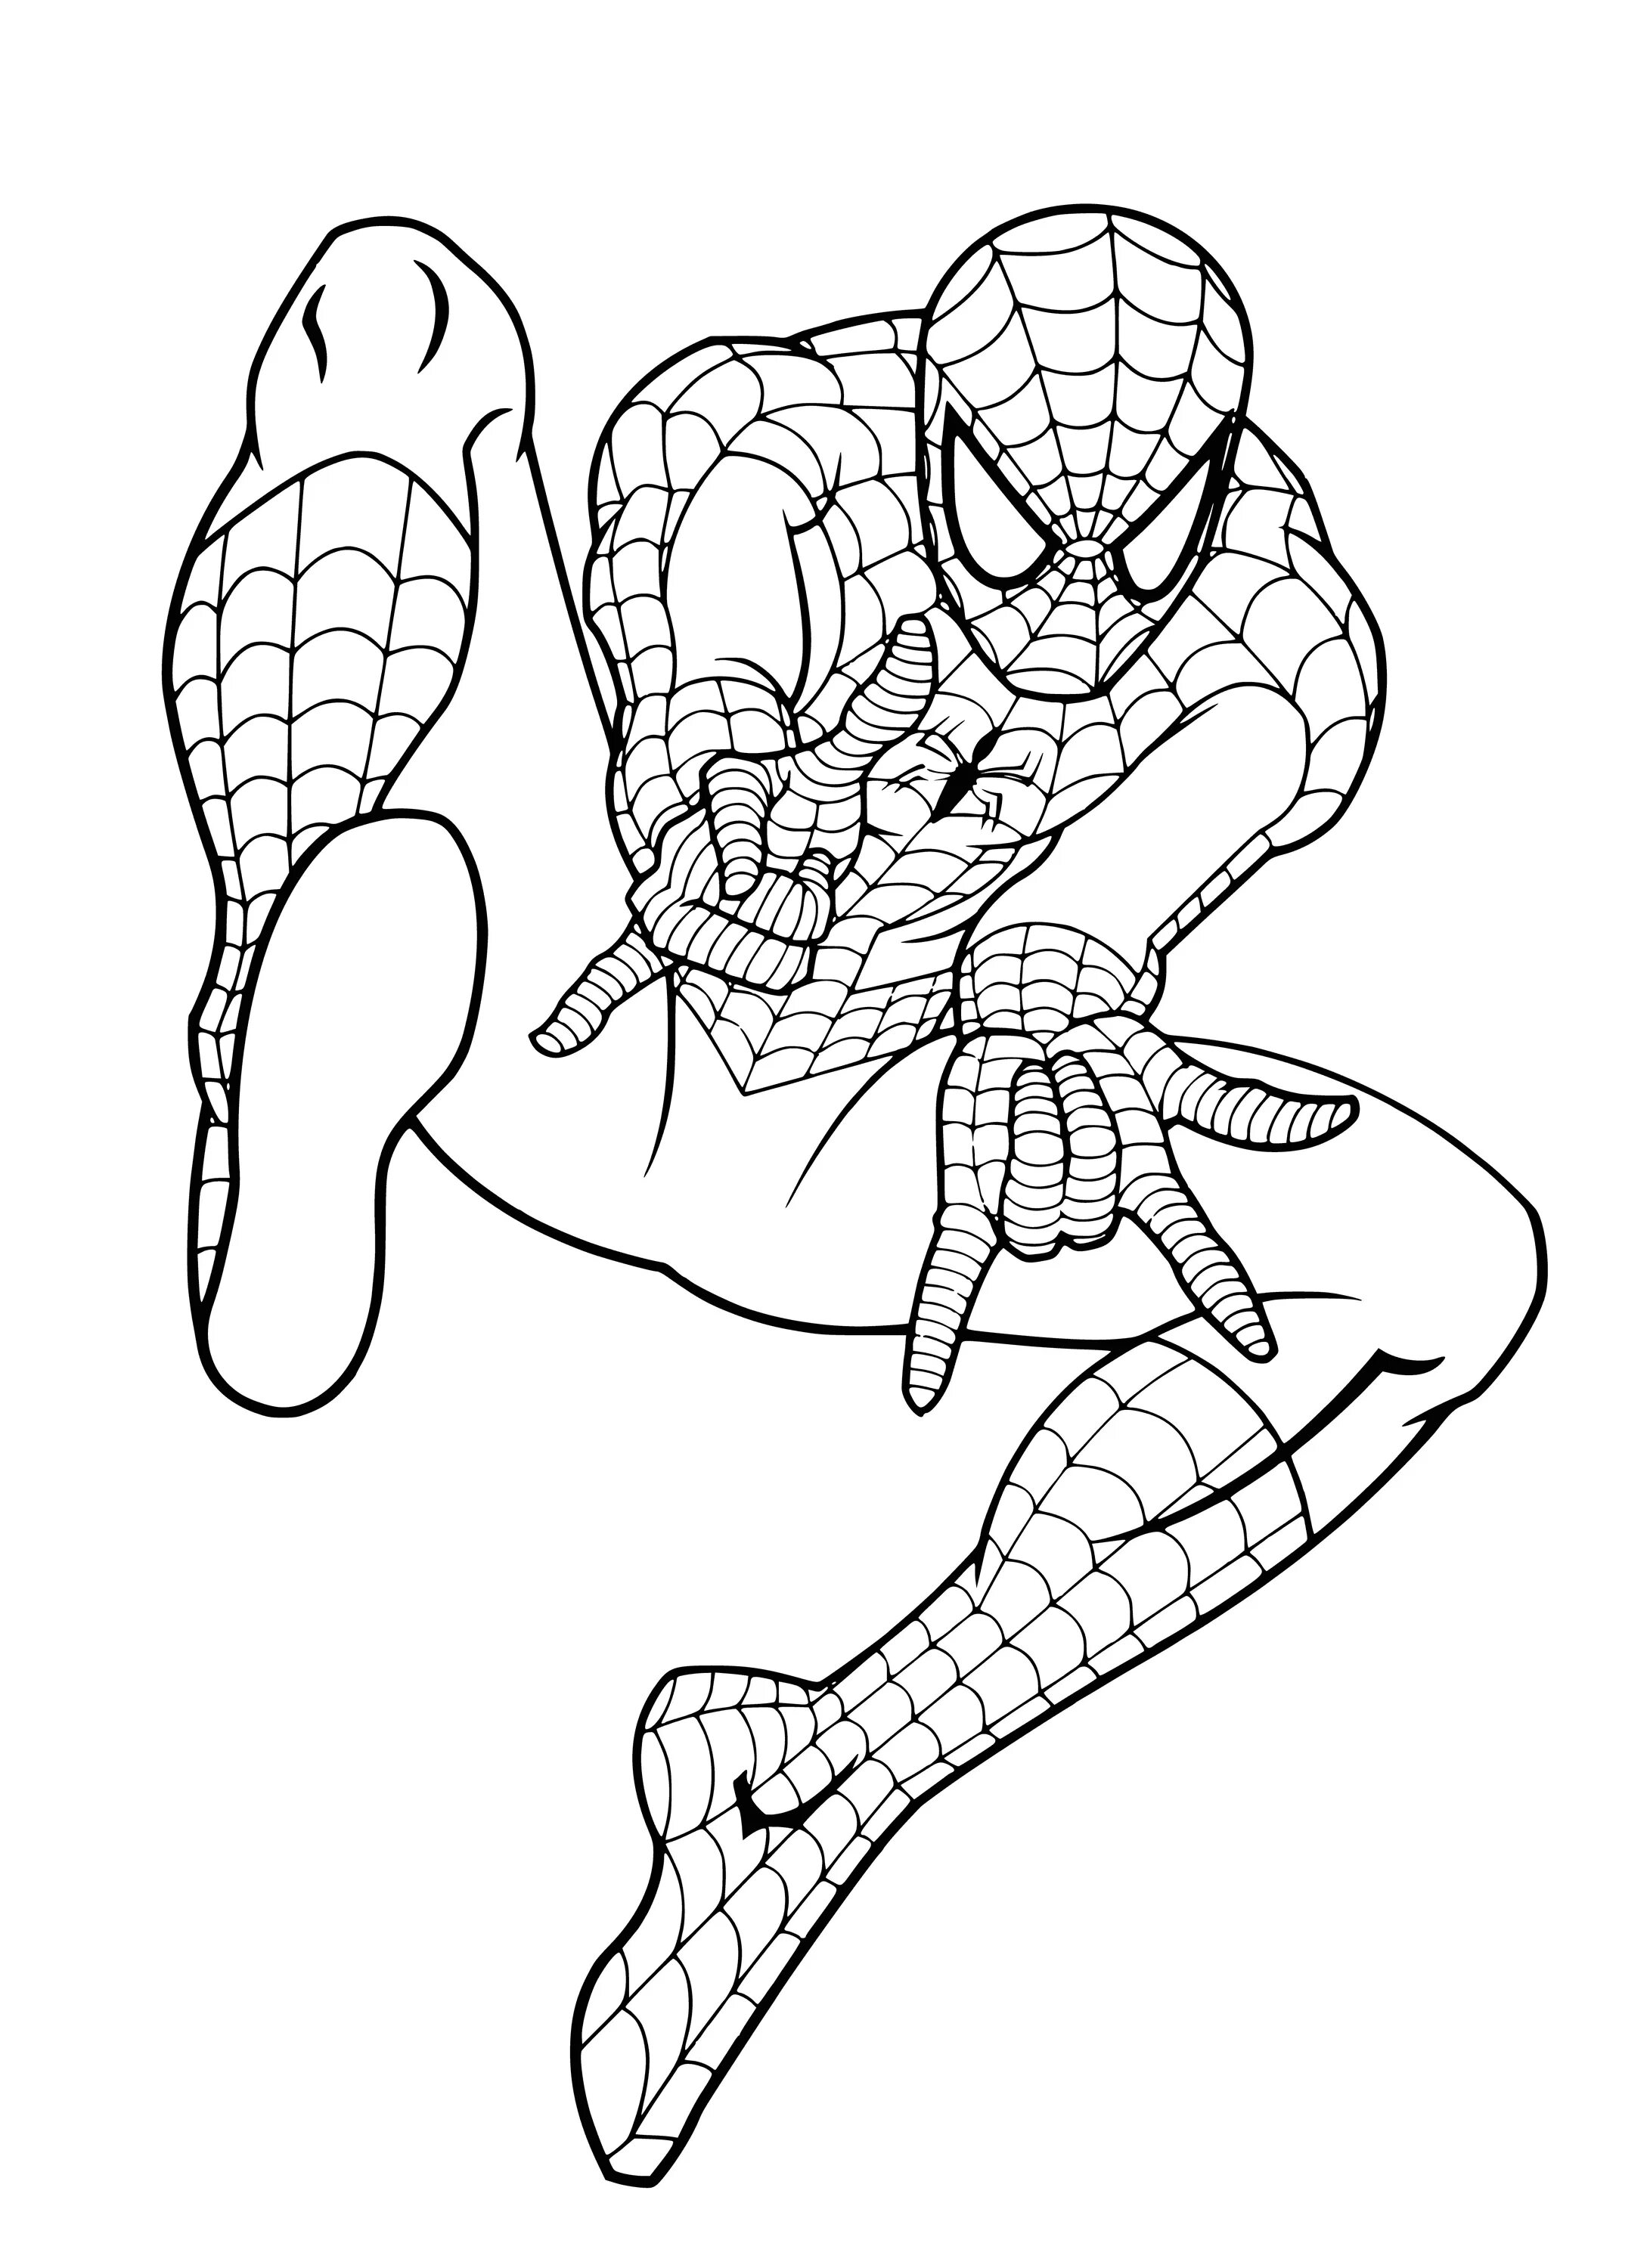 Spider-man format #7